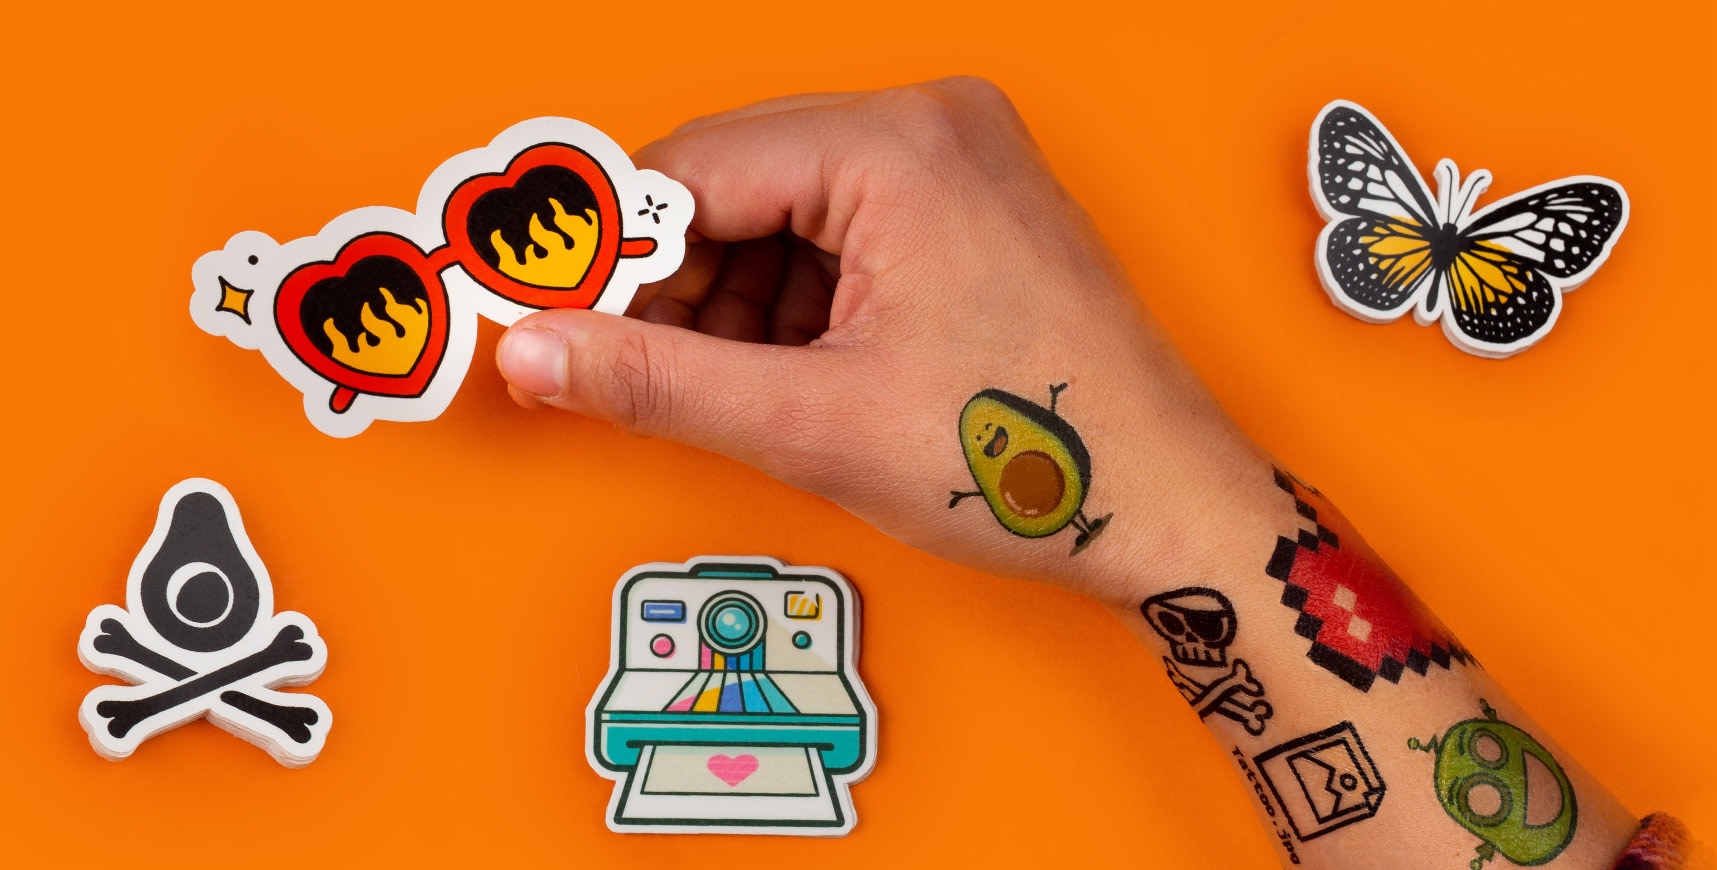 nep tattoos op maat in verschillende vormen op een oranje achtergrond